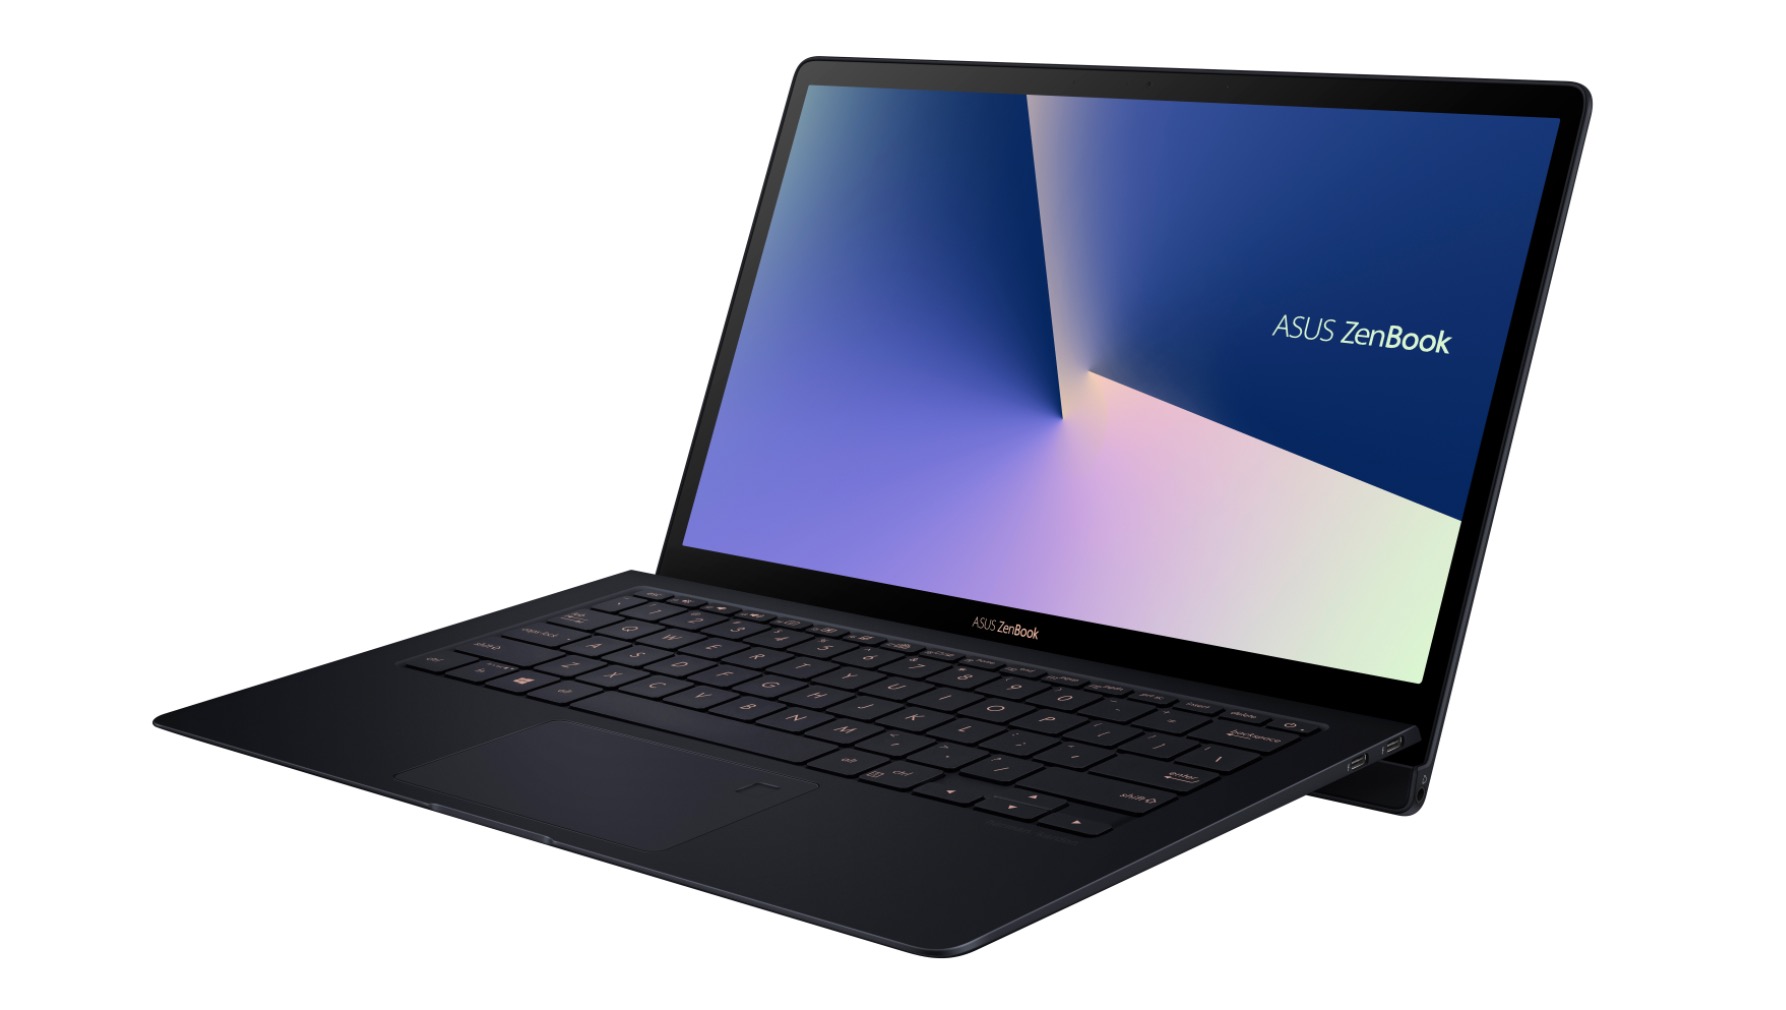 ASUS chính thức ra mắt ZenBook S: Chiếc laptop siêu mỏng nhẹ, cao cấp nhất của dòng ZenBook